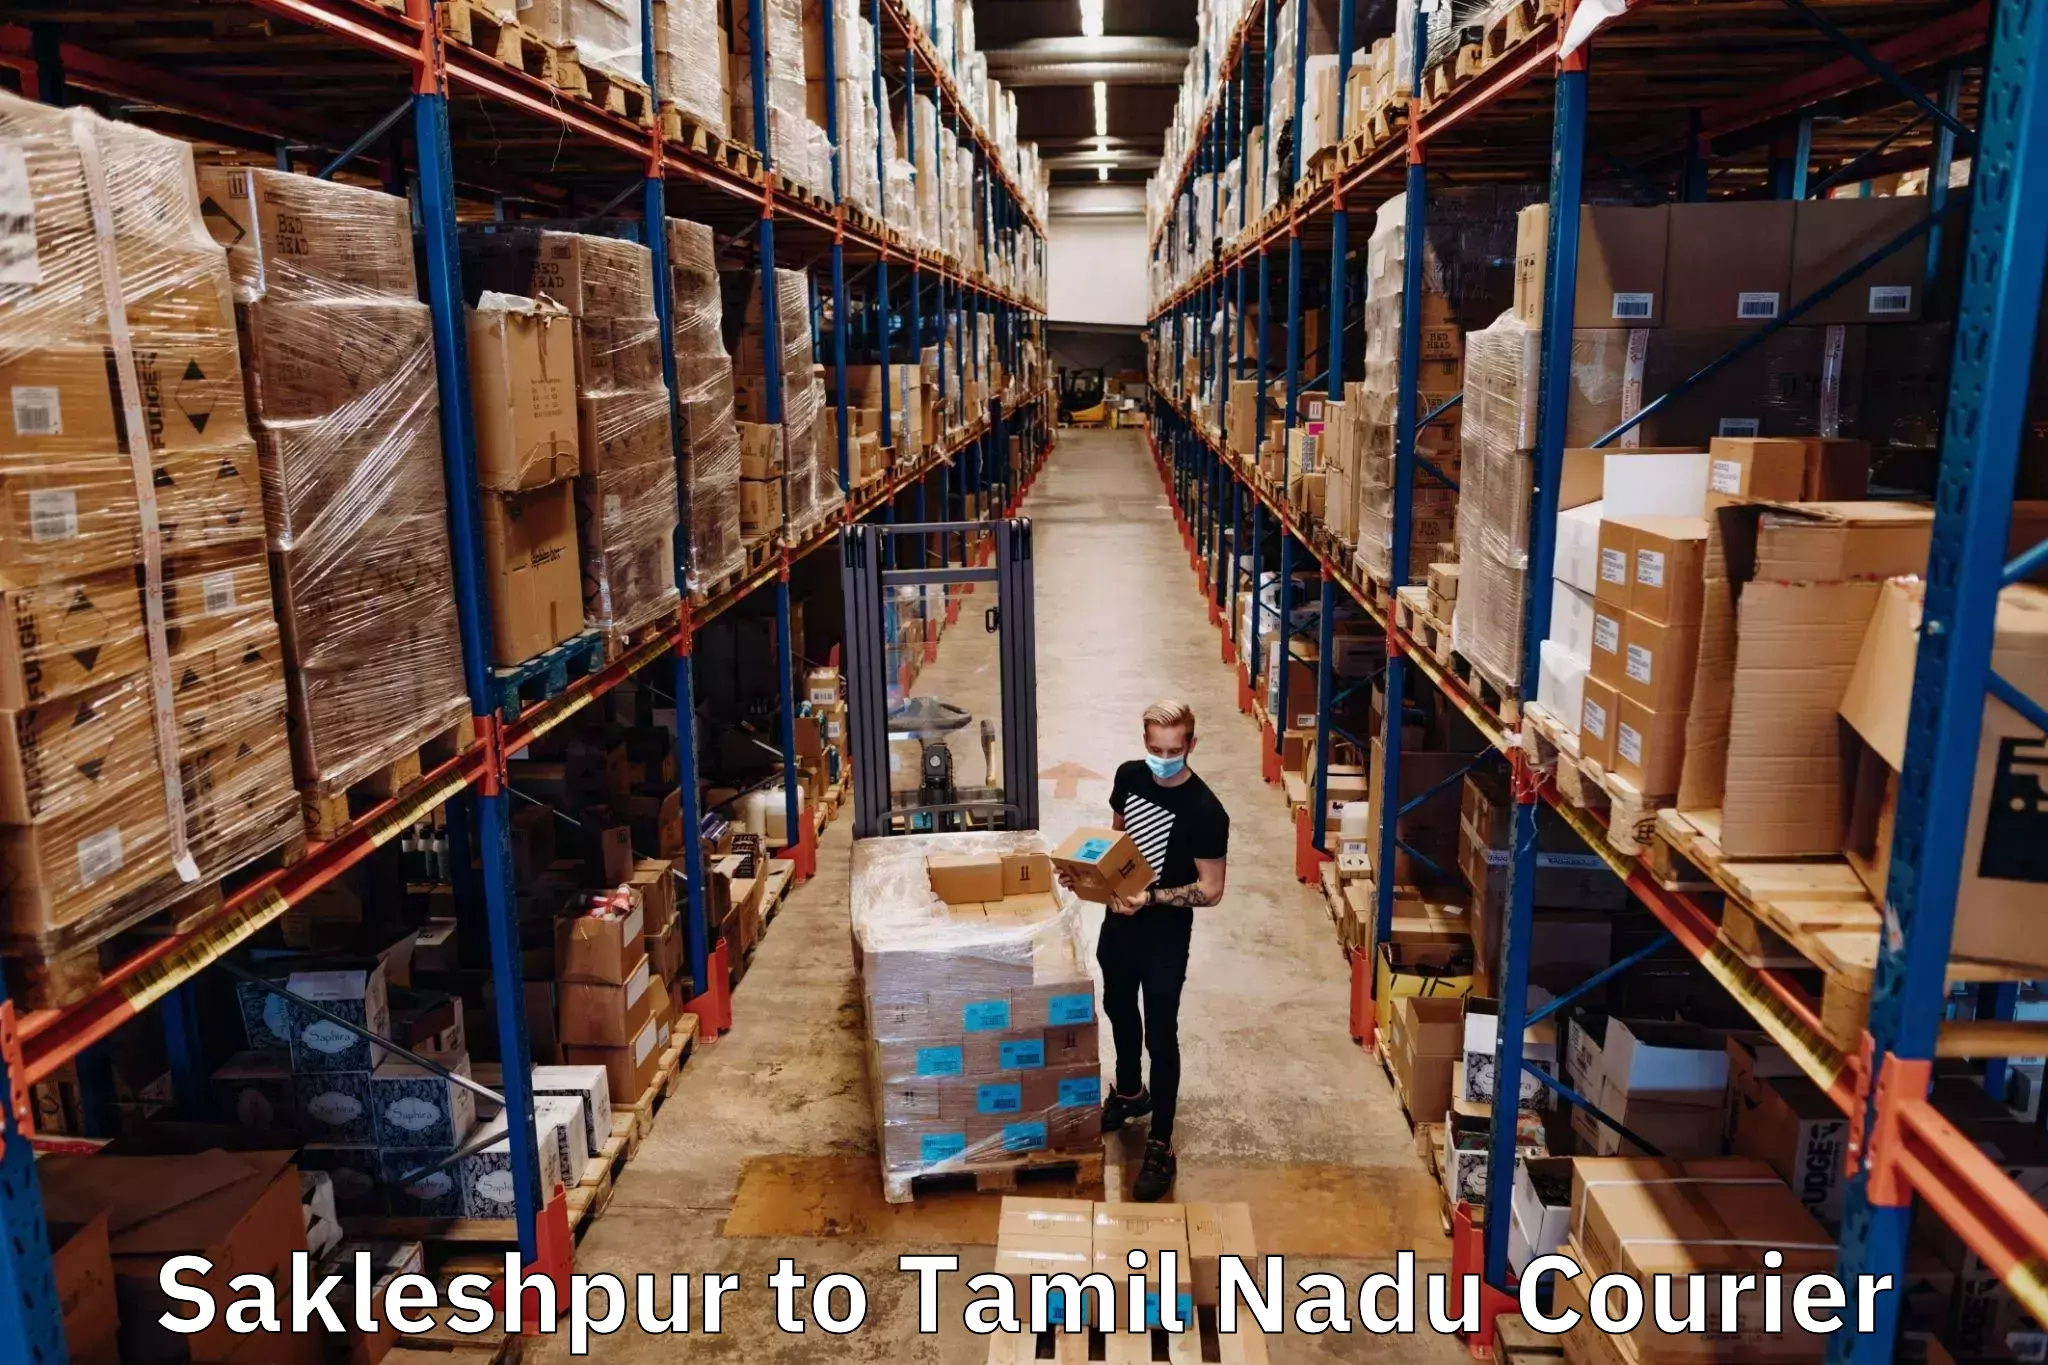 Subscription-based courier Sakleshpur to Kanchipuram